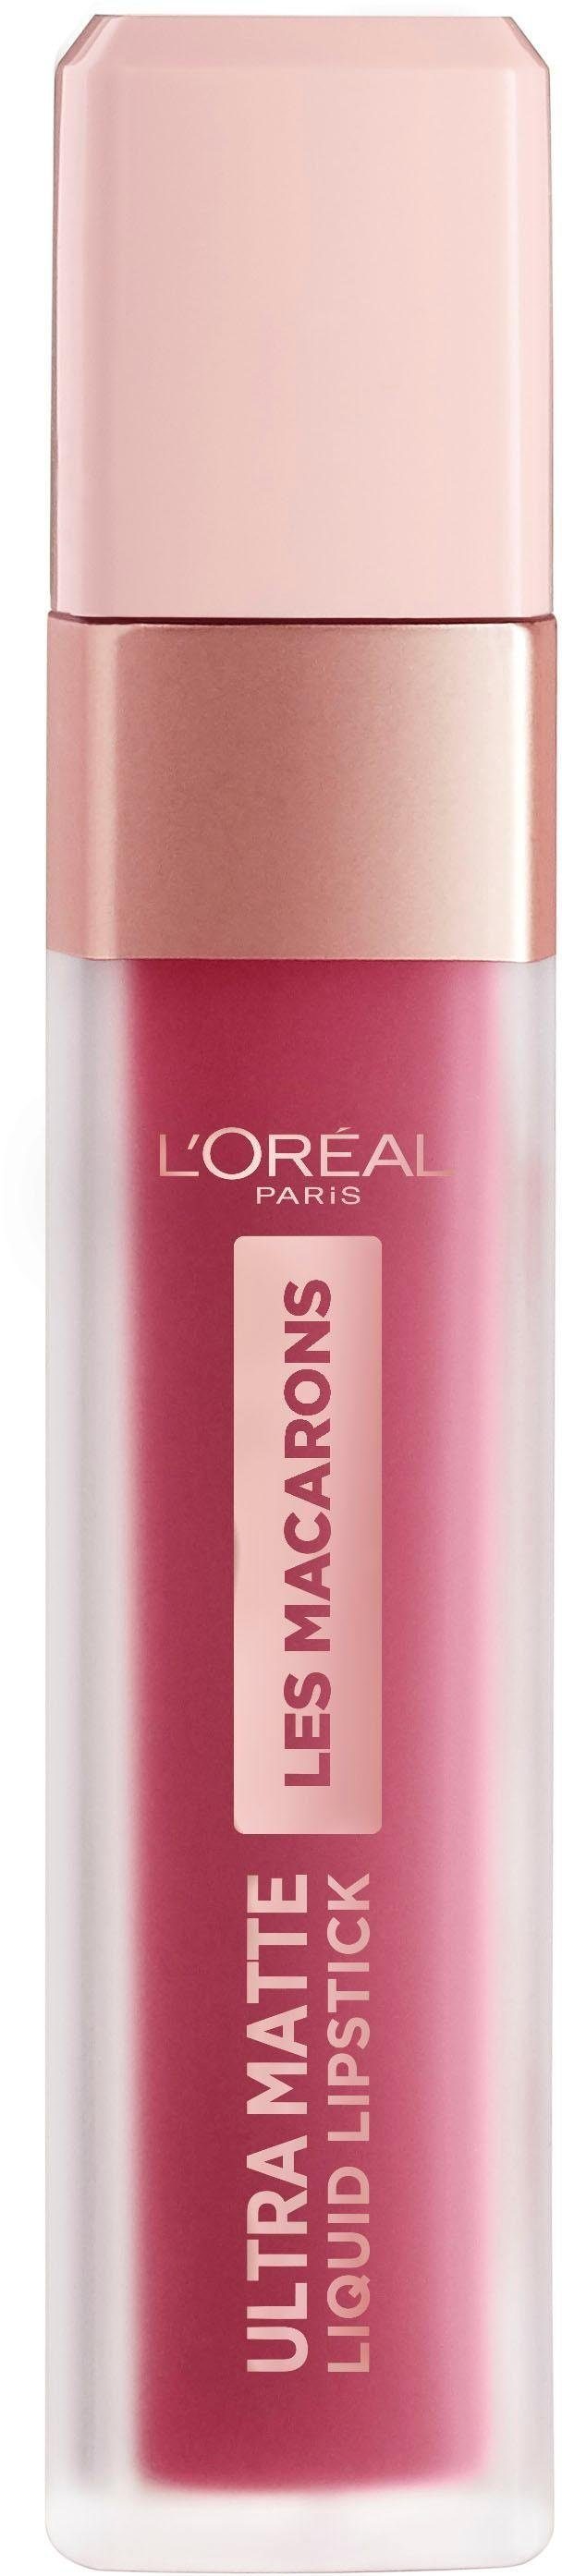 Praline PARIS Paris 820 L'ORÉAL Macarons Lippenstift Infaillible de Ultra-Matte Les